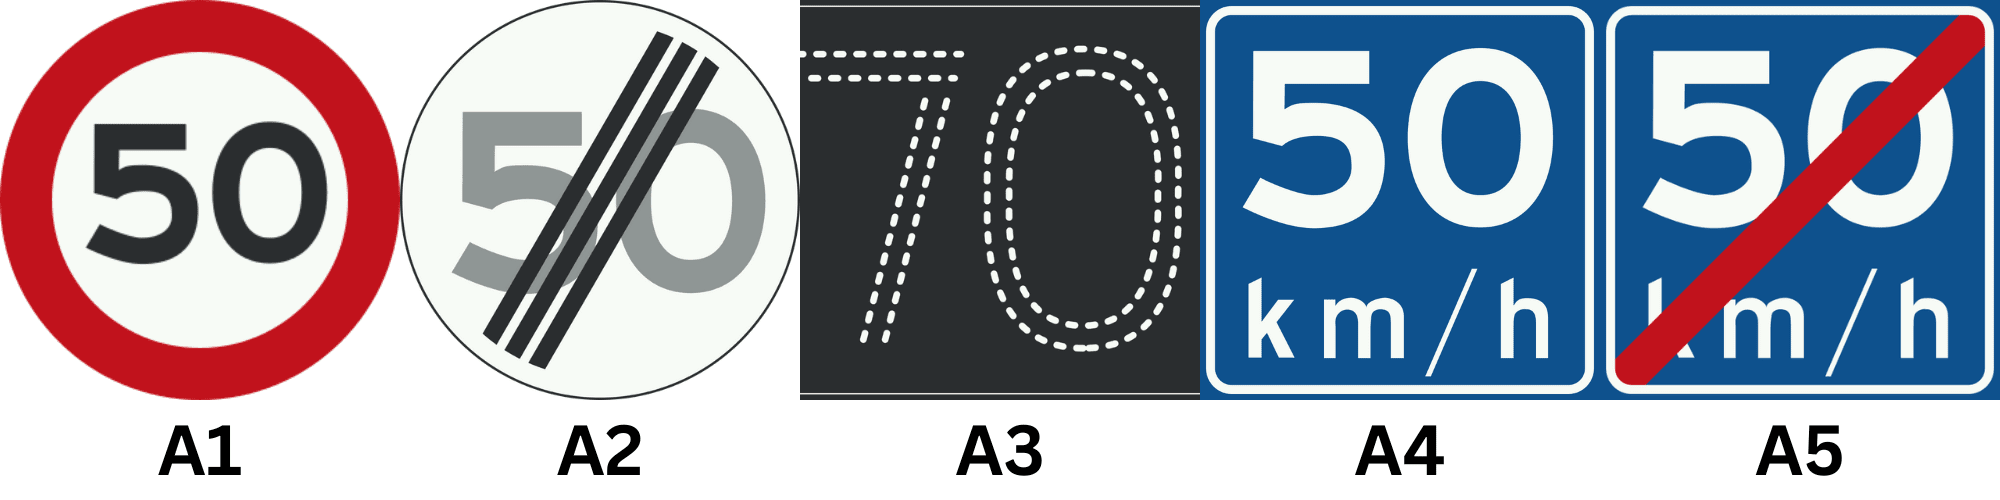 Verkeersborden A1, A2, A3, A4 en A5